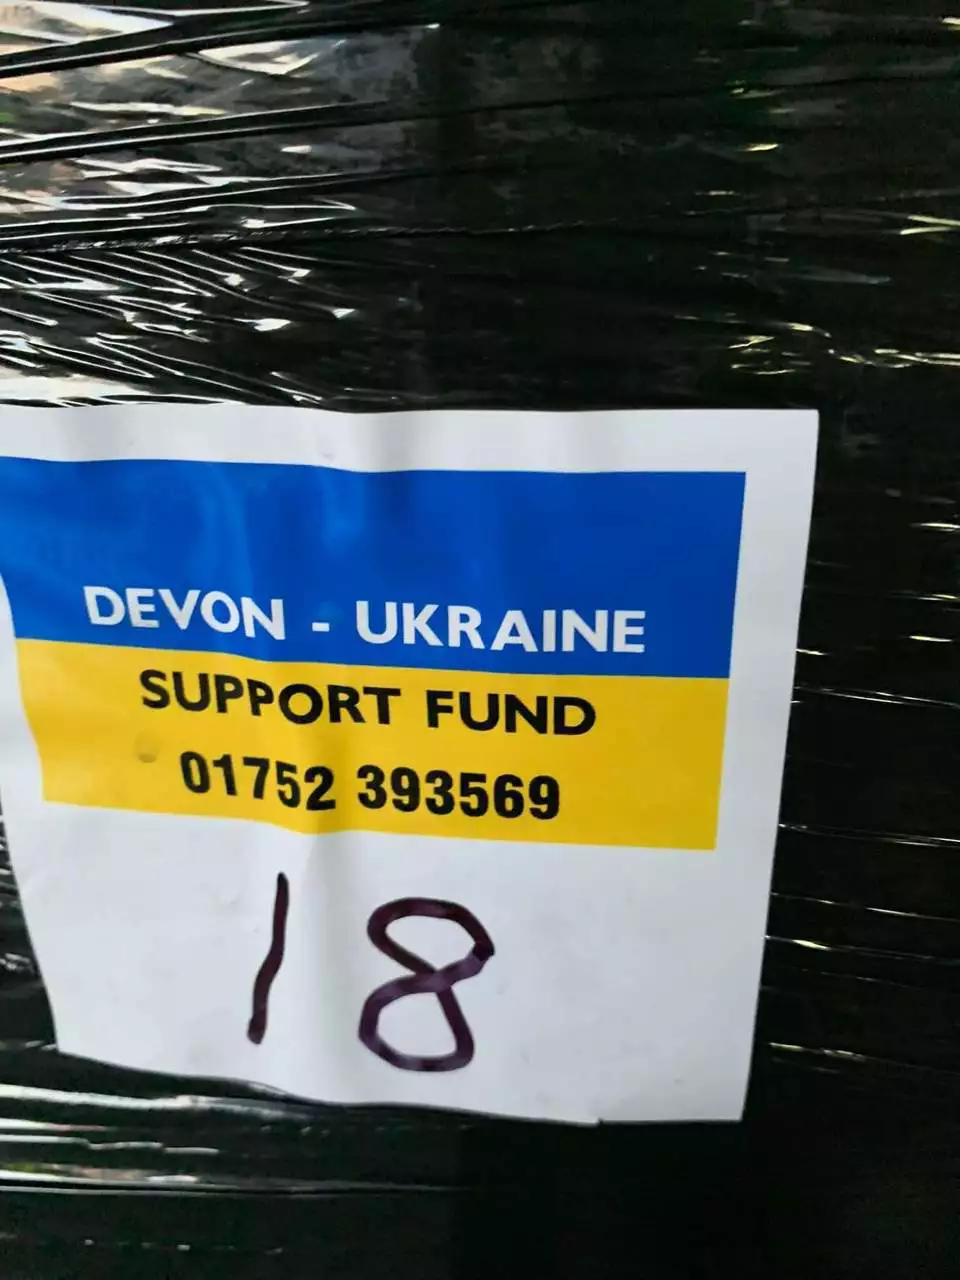 Devon - Ukraine Support Fund | Asda Plymouth